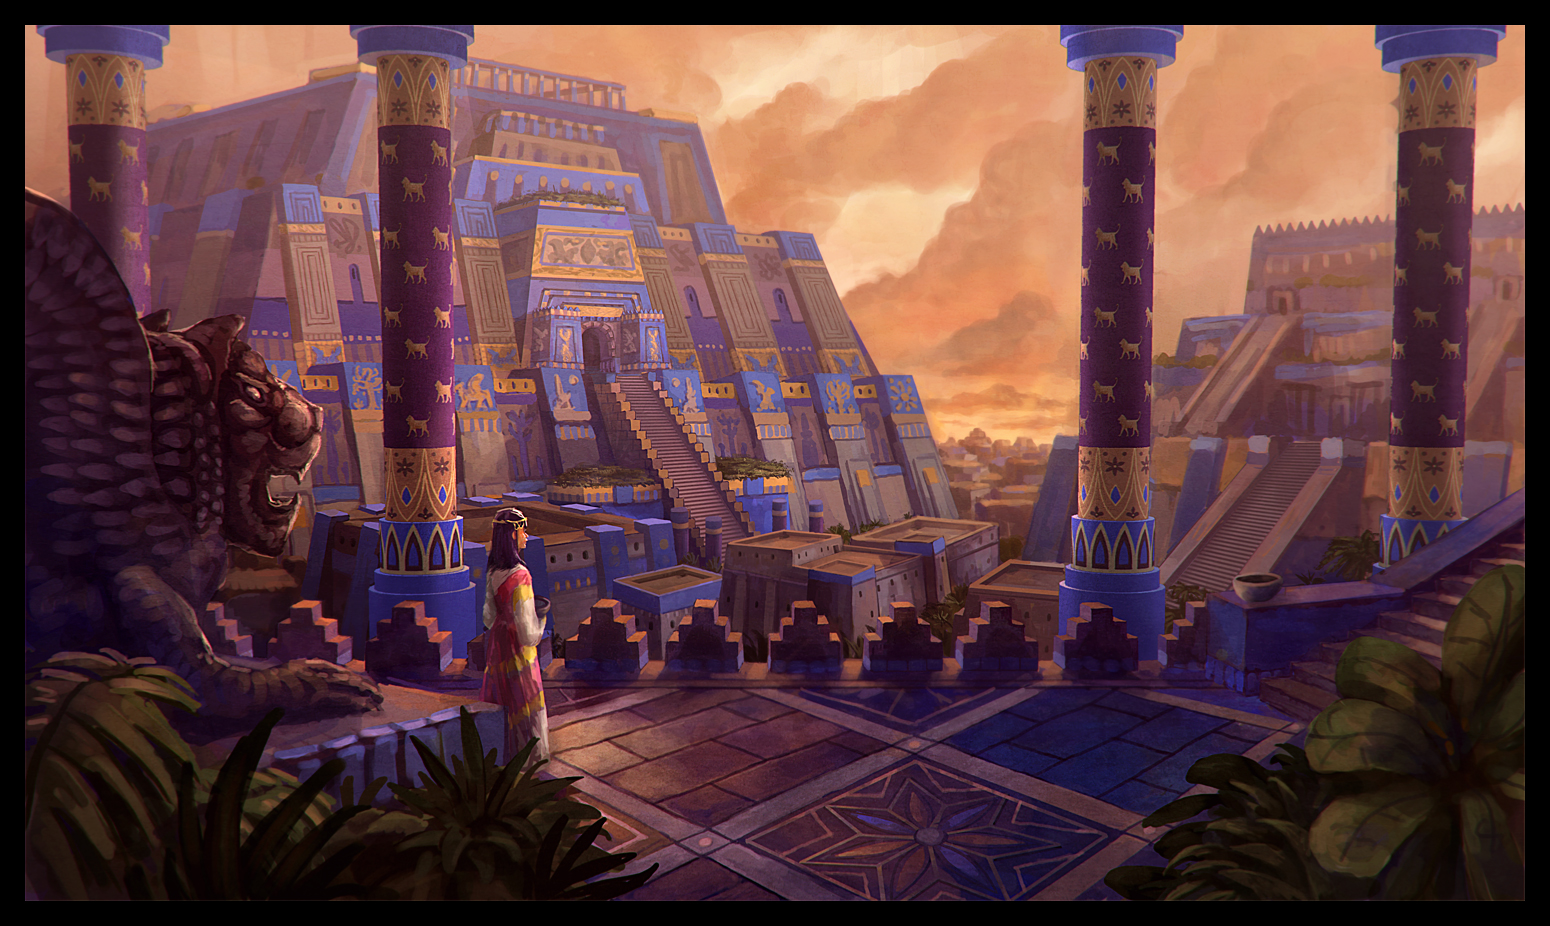 Mesopotamia Background